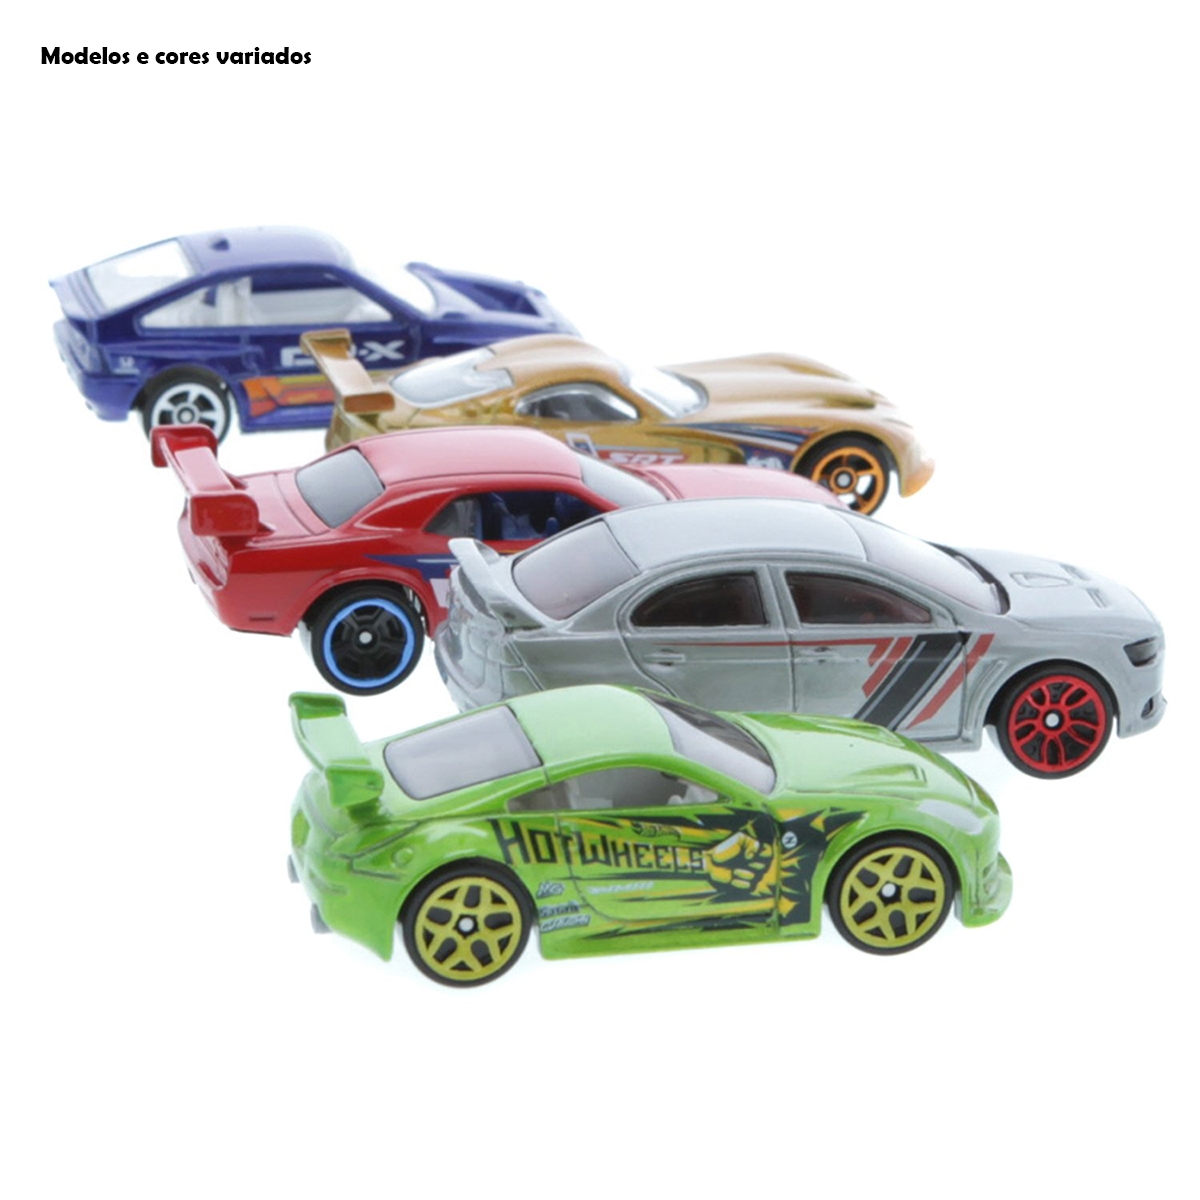 Carrinhos Hot Wheels Com 5 Unidades (Sortido) - Mattel em Promoção